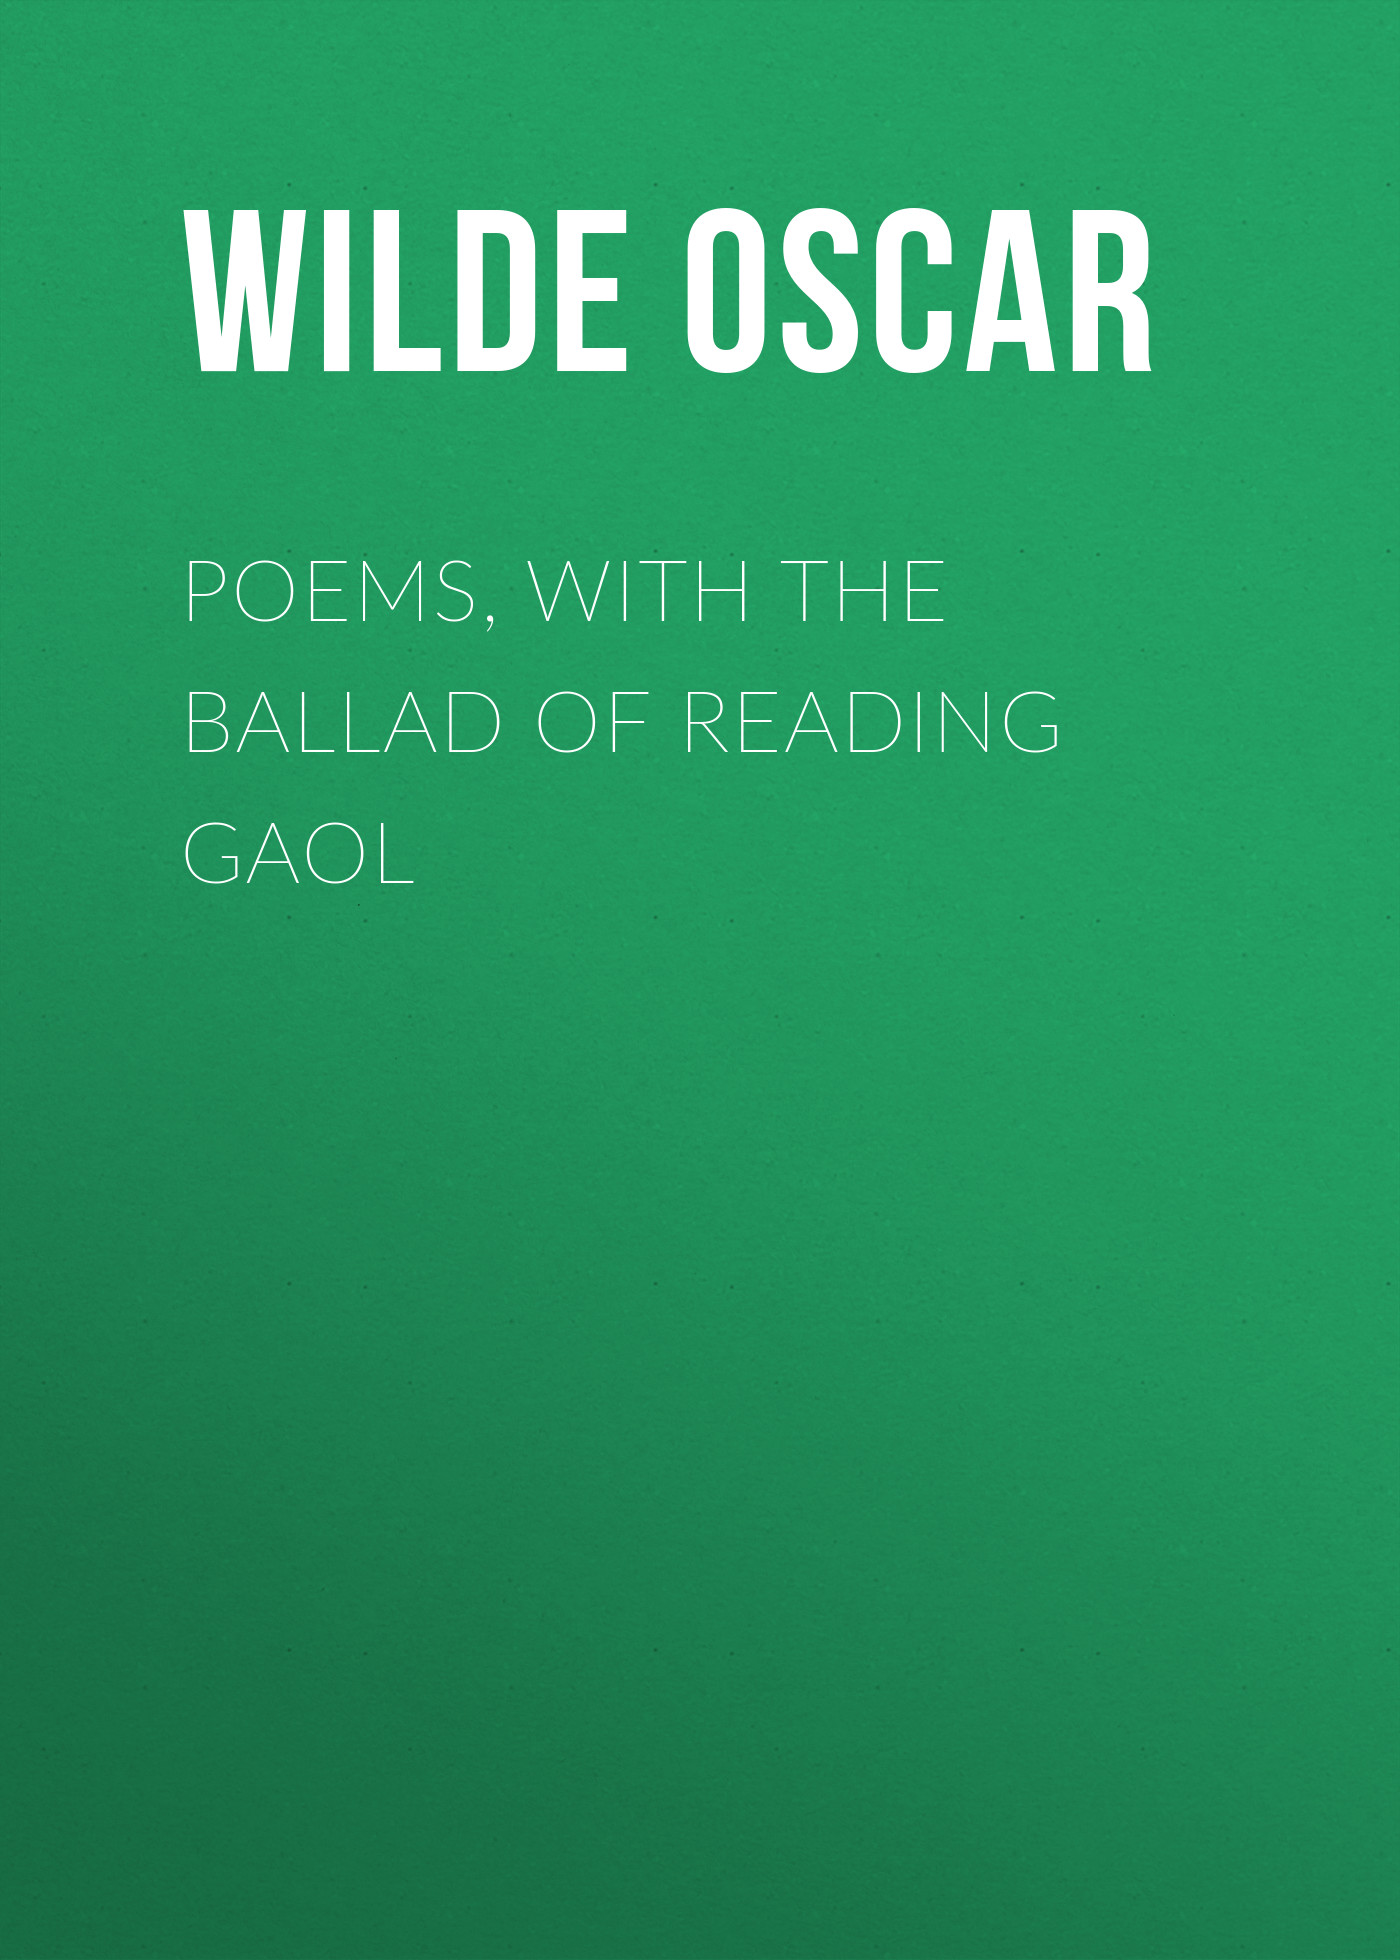 Книга Poems, with The Ballad of Reading Gaol из серии , созданная Oscar Wilde, может относится к жанру Литература 19 века, Поэзия, Зарубежная классика, Зарубежные стихи. Стоимость электронной книги Poems, with The Ballad of Reading Gaol с идентификатором 25559228 составляет 0 руб.